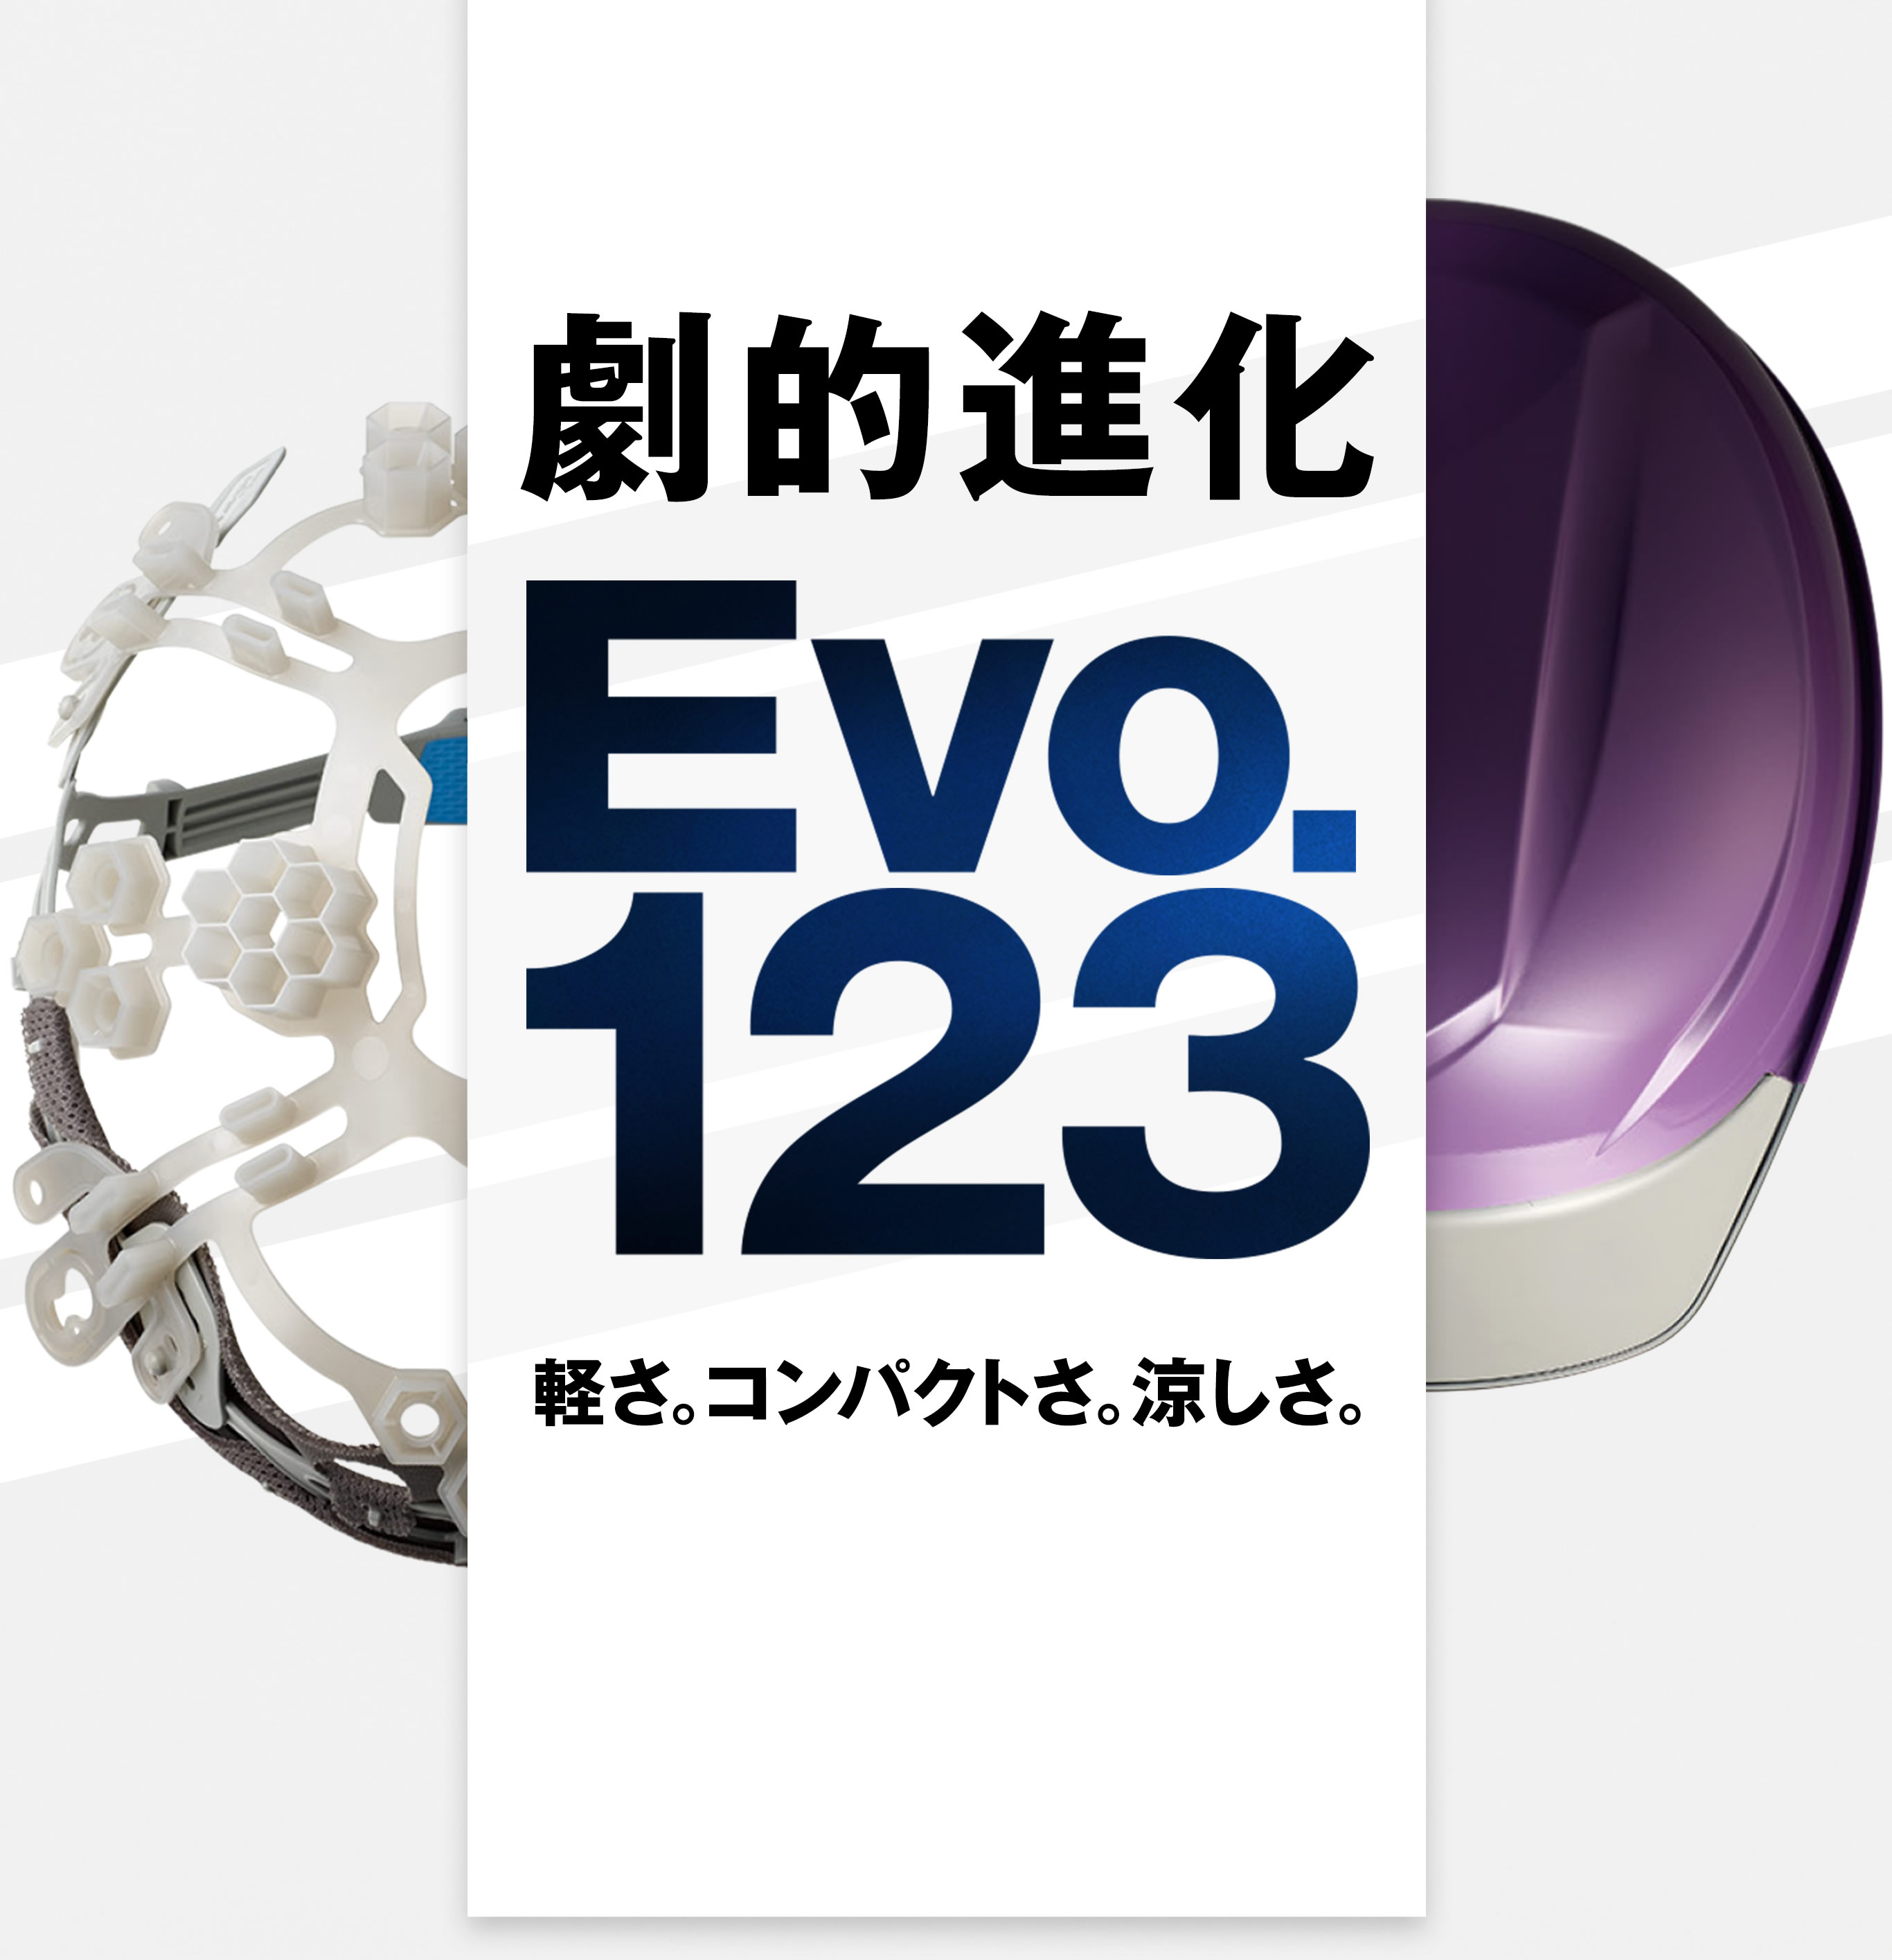 Evo.123 軽さ。コンパクトさ。涼しさ。劇的進化